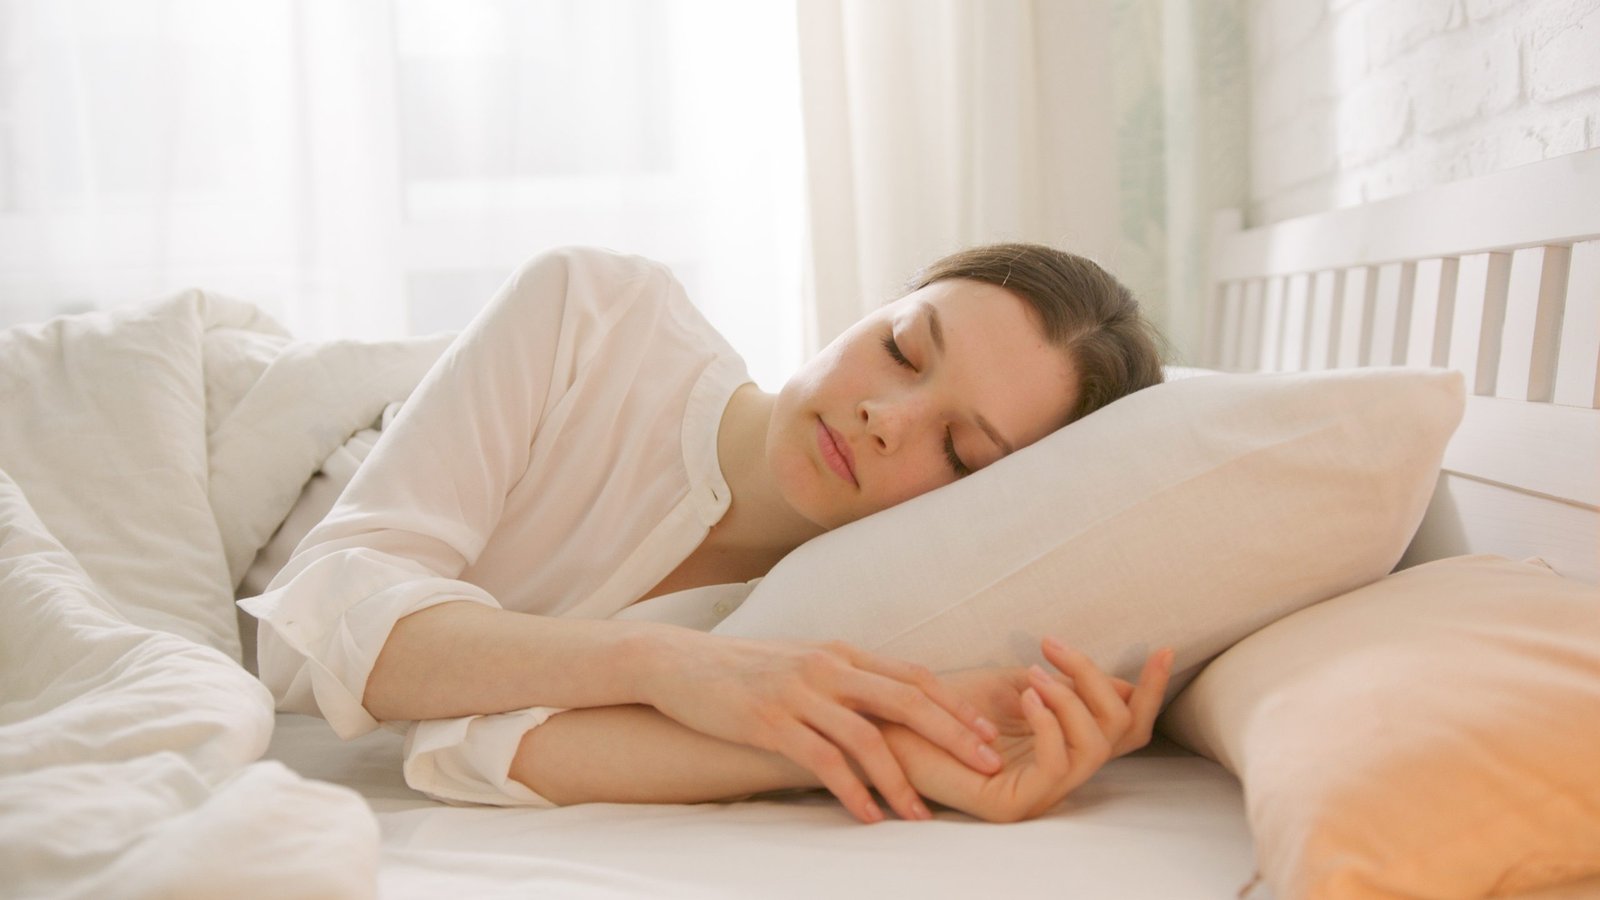 Benefits of beauty sleep